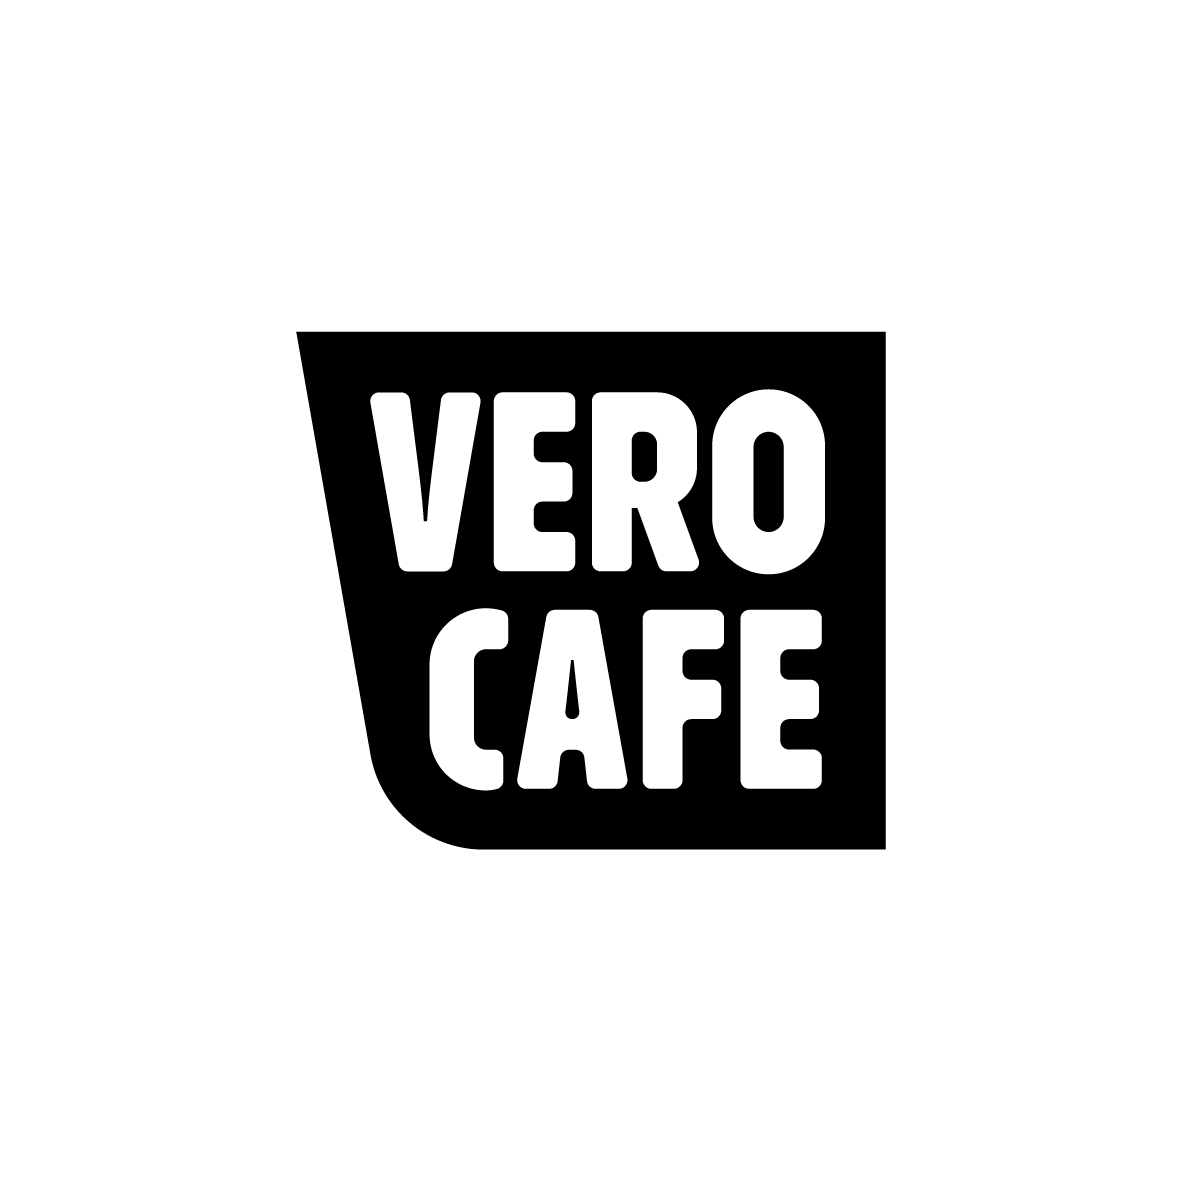 VERO CAFE